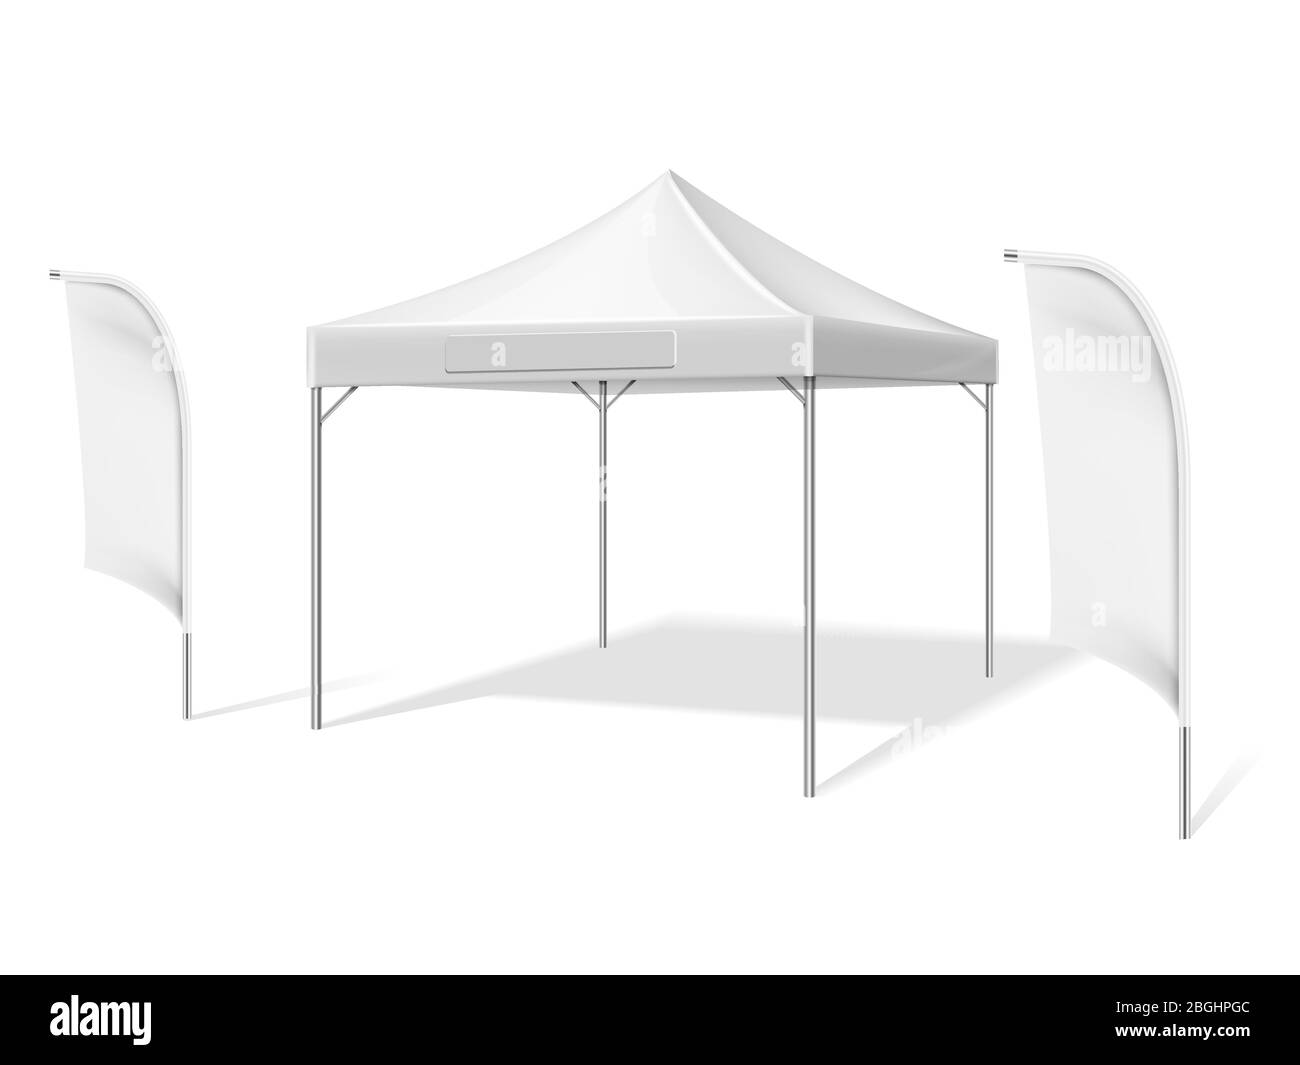 Tente d'événement extérieur blanche vide avec drapeaux de matériel de plage volants illustration vectorielle isolée sur fond blanc. Tente repliée, porte-marquis Illustration de Vecteur